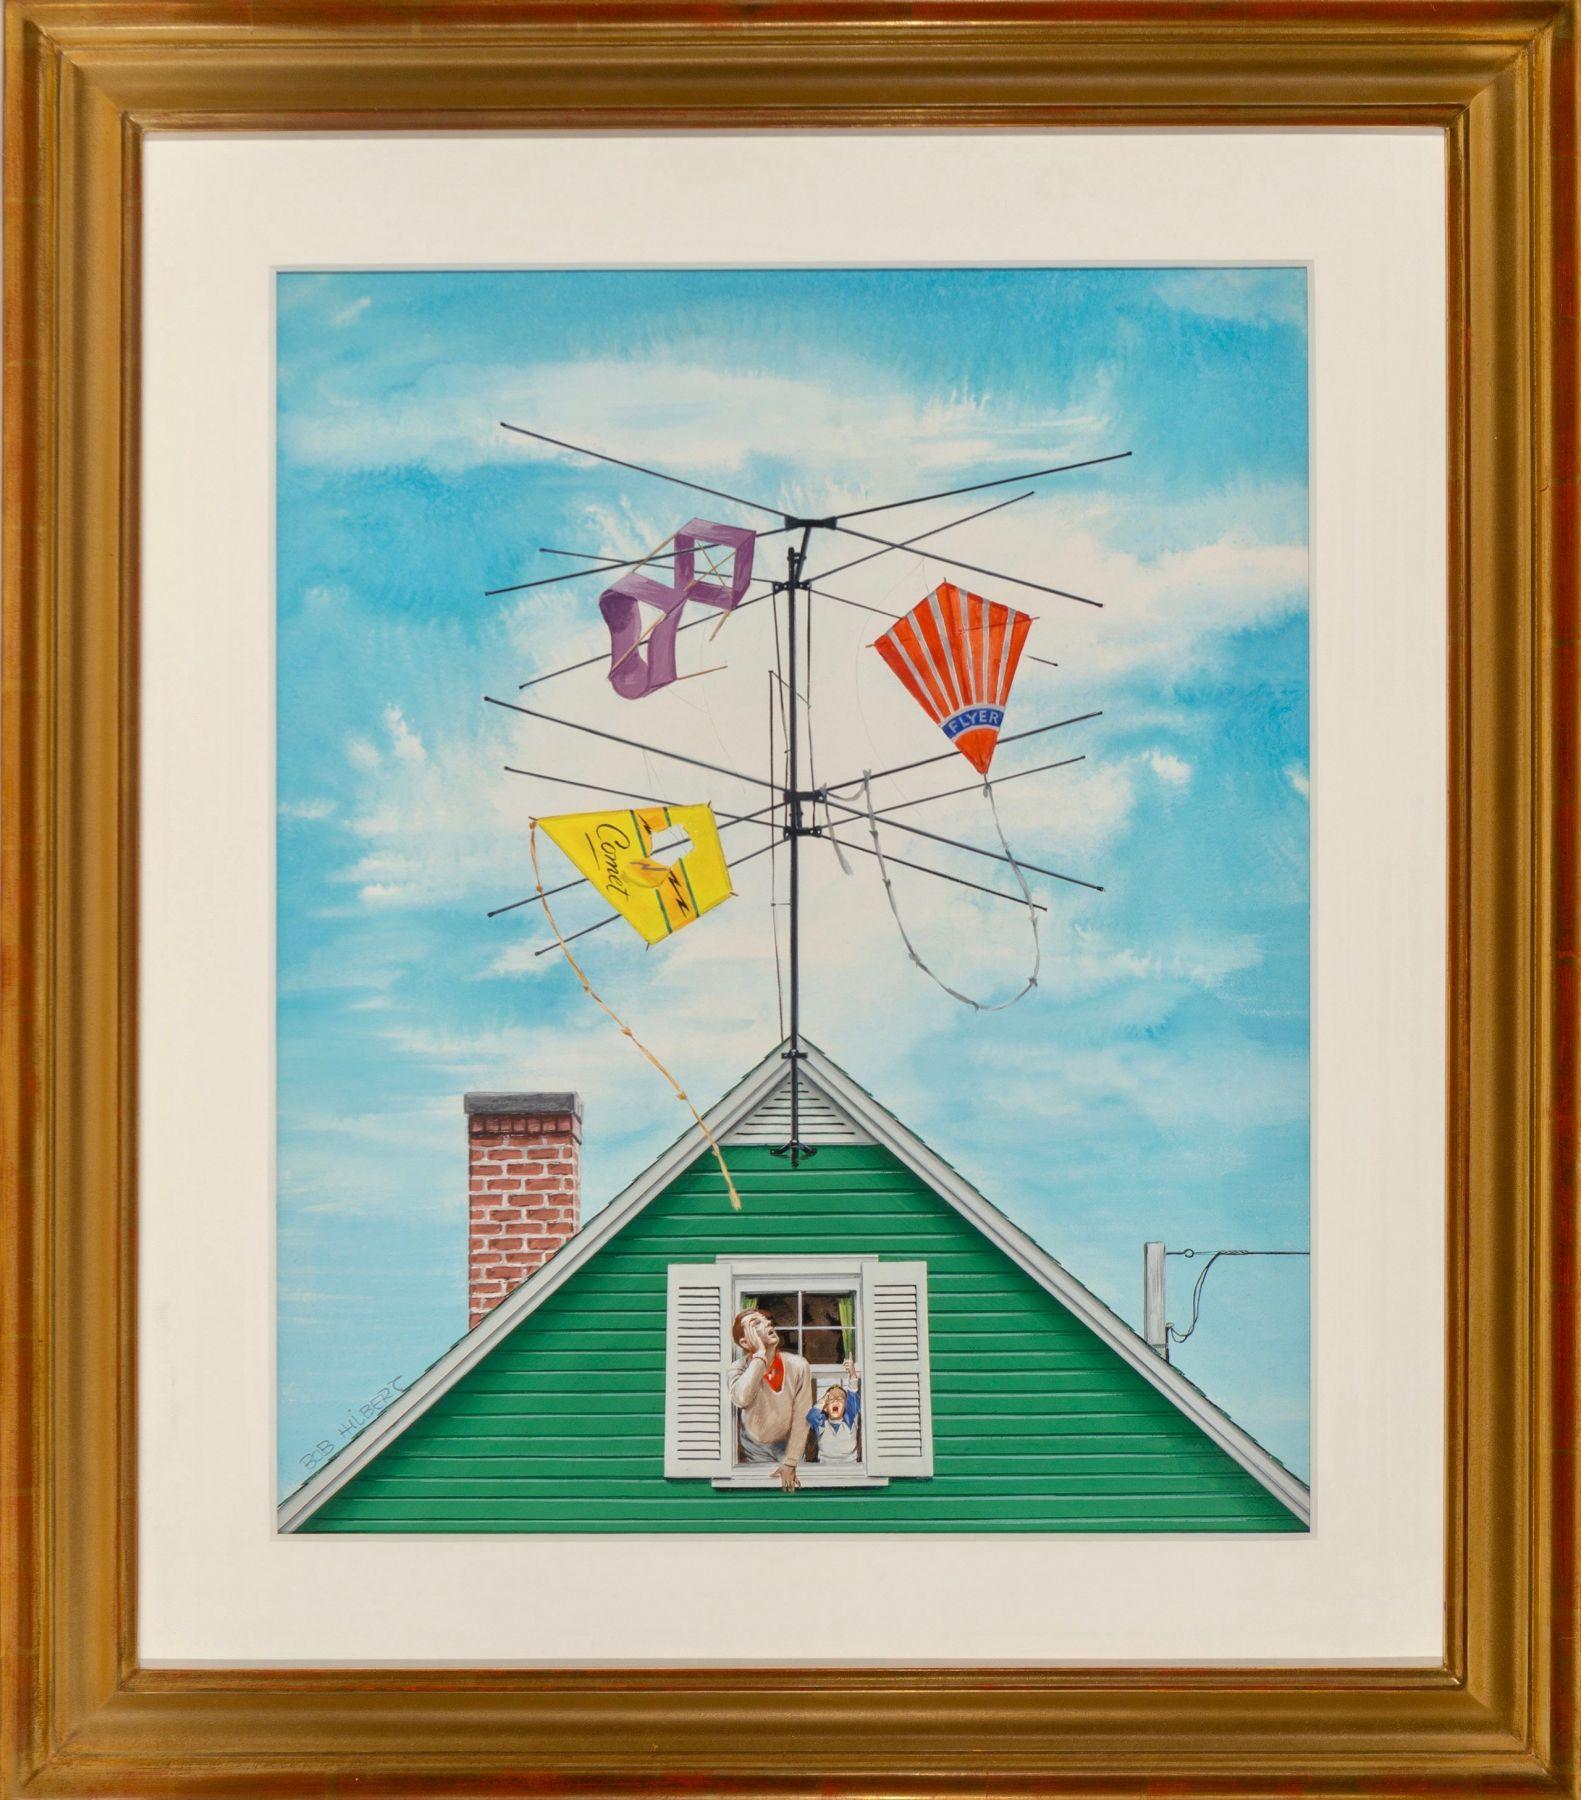 Kite Catcher - Painting by Robert Hilbert